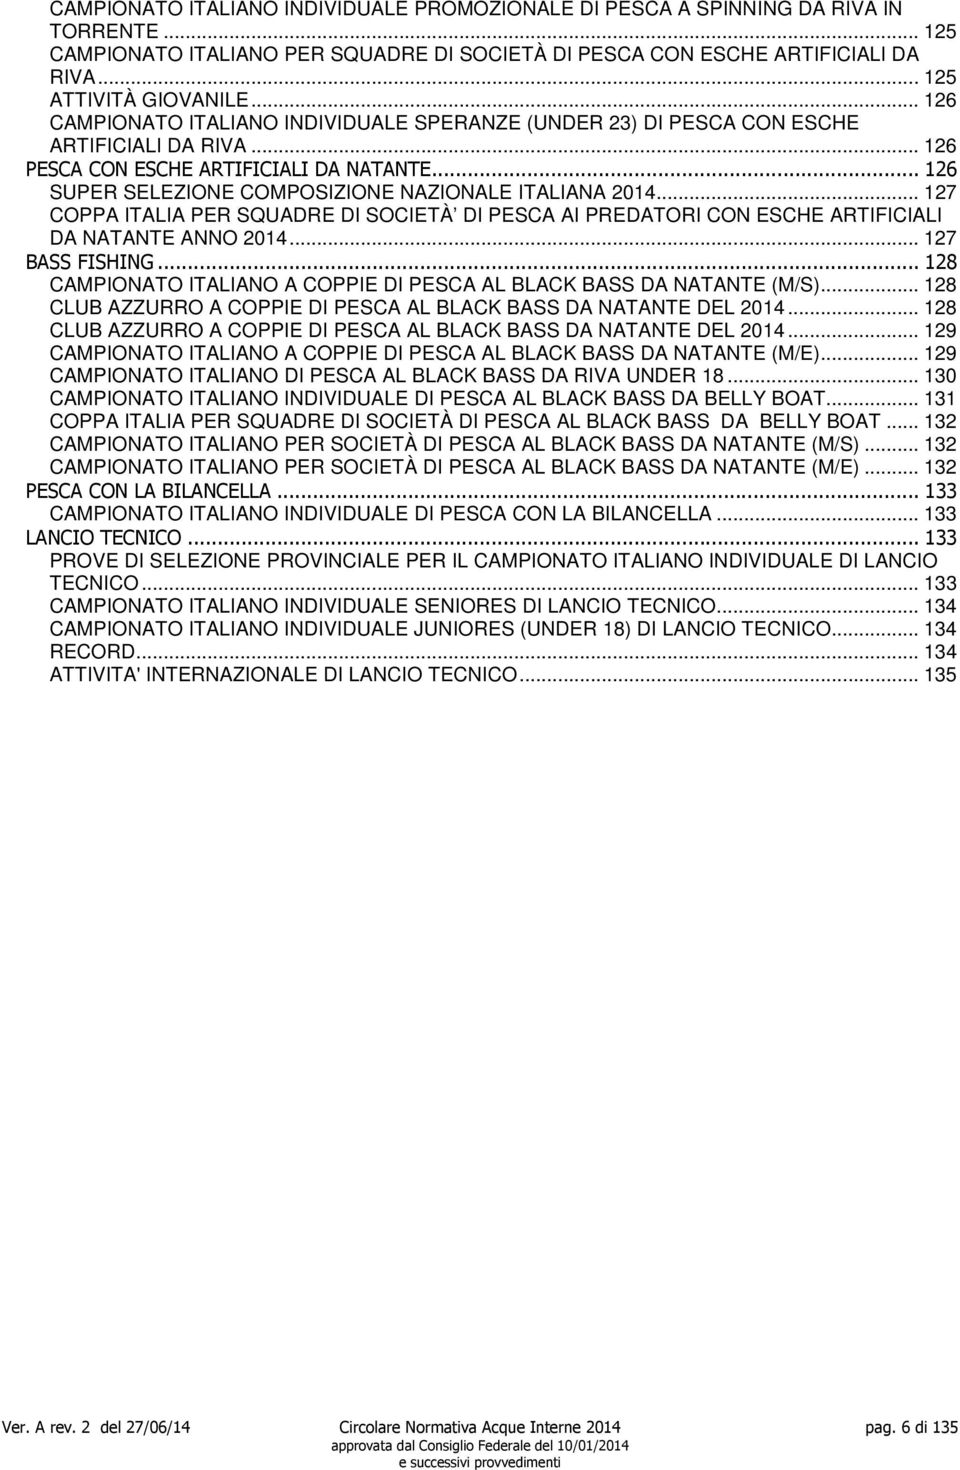 .. 126 SUPER SELEZIONE COMPOSIZIONE NAZIONALE ITALIANA 2014... 127 COPPA ITALIA PER SQUADRE DI SOCIETÀ DI PESCA AI PREDATORI CON ESCHE ARTIFICIALI DA NATANTE ANNO 2014... 127 BASS FISHING.